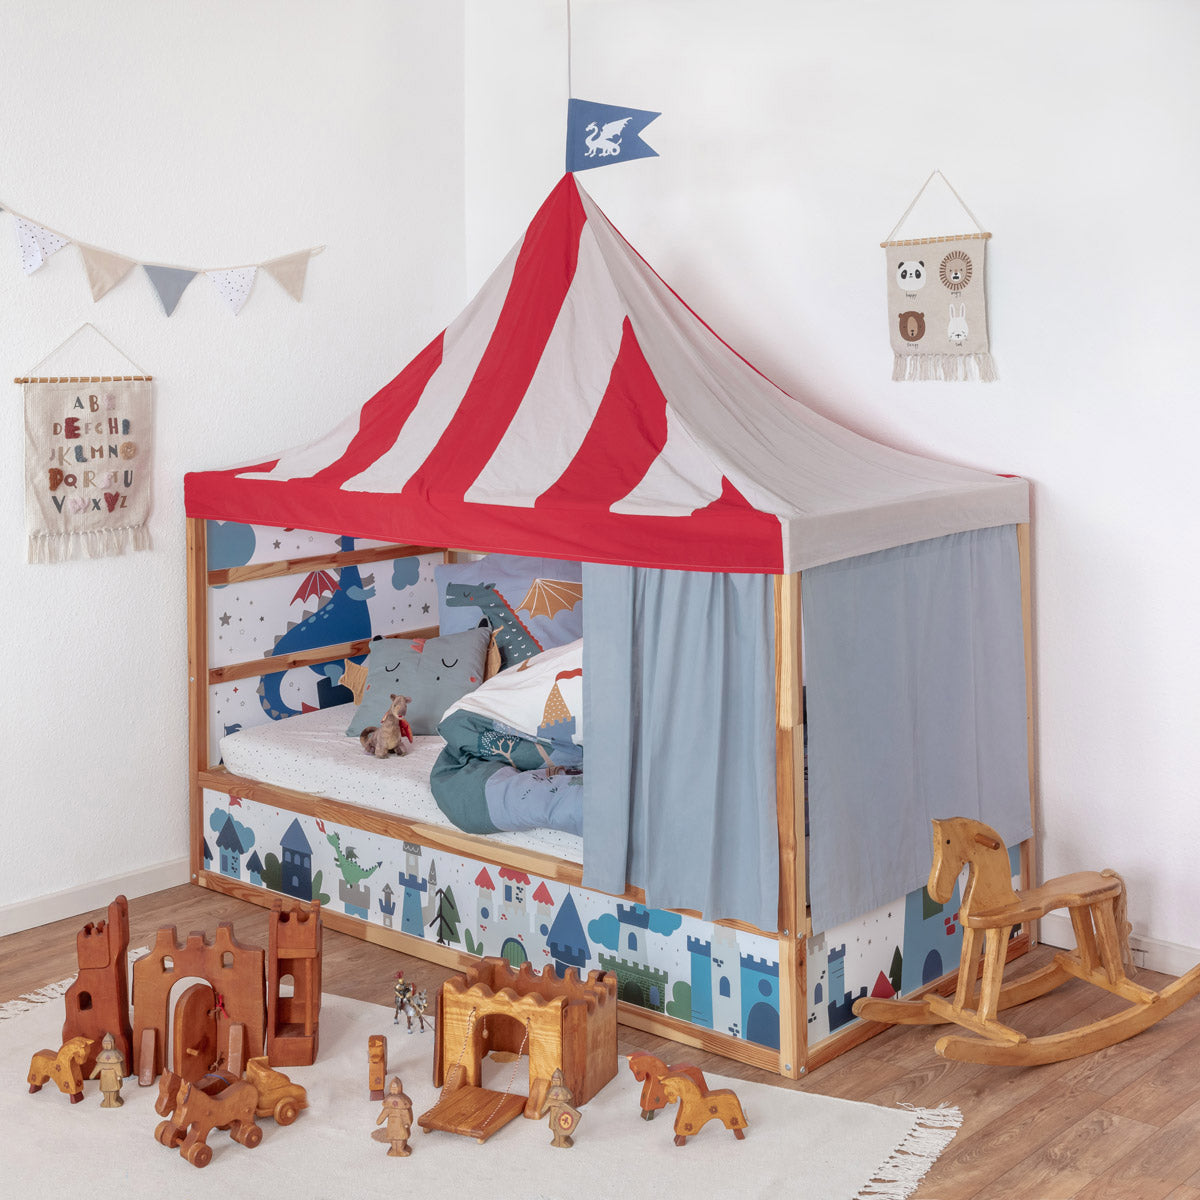 Kinderzimmer mit Ikea Kura Kinderbett mit Ritter Betthimmelset in Rotweiss mit Flagge, blauen Bettvorhängen und Ritter Stickerset